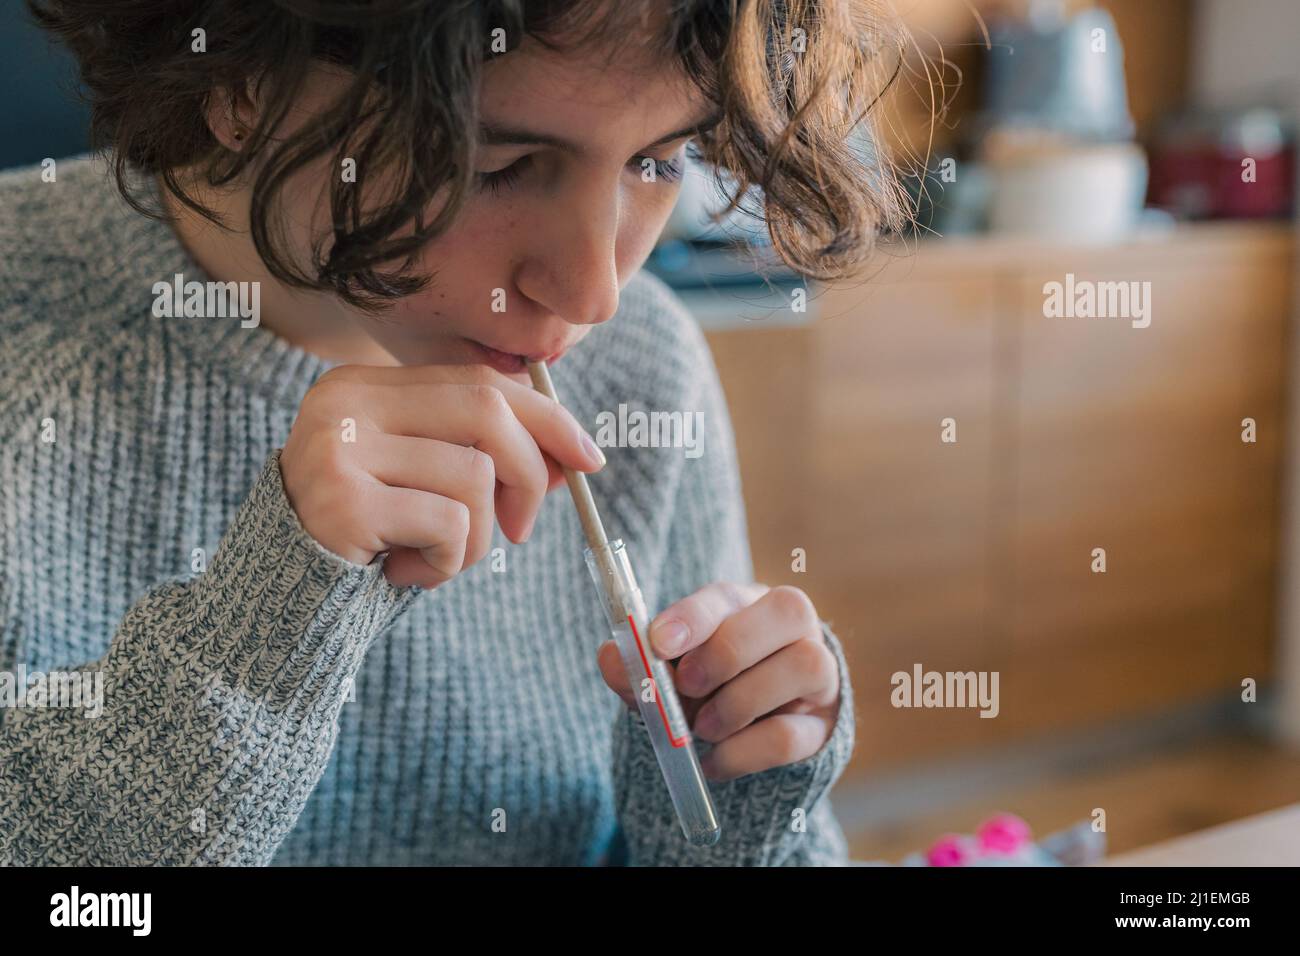 Prélèvement du test de salive pour le coronavirus à la maison. Une adolescente effectue un test rapide de l'échantillon de salive pour détecter la présence du coronavirus Banque D'Images